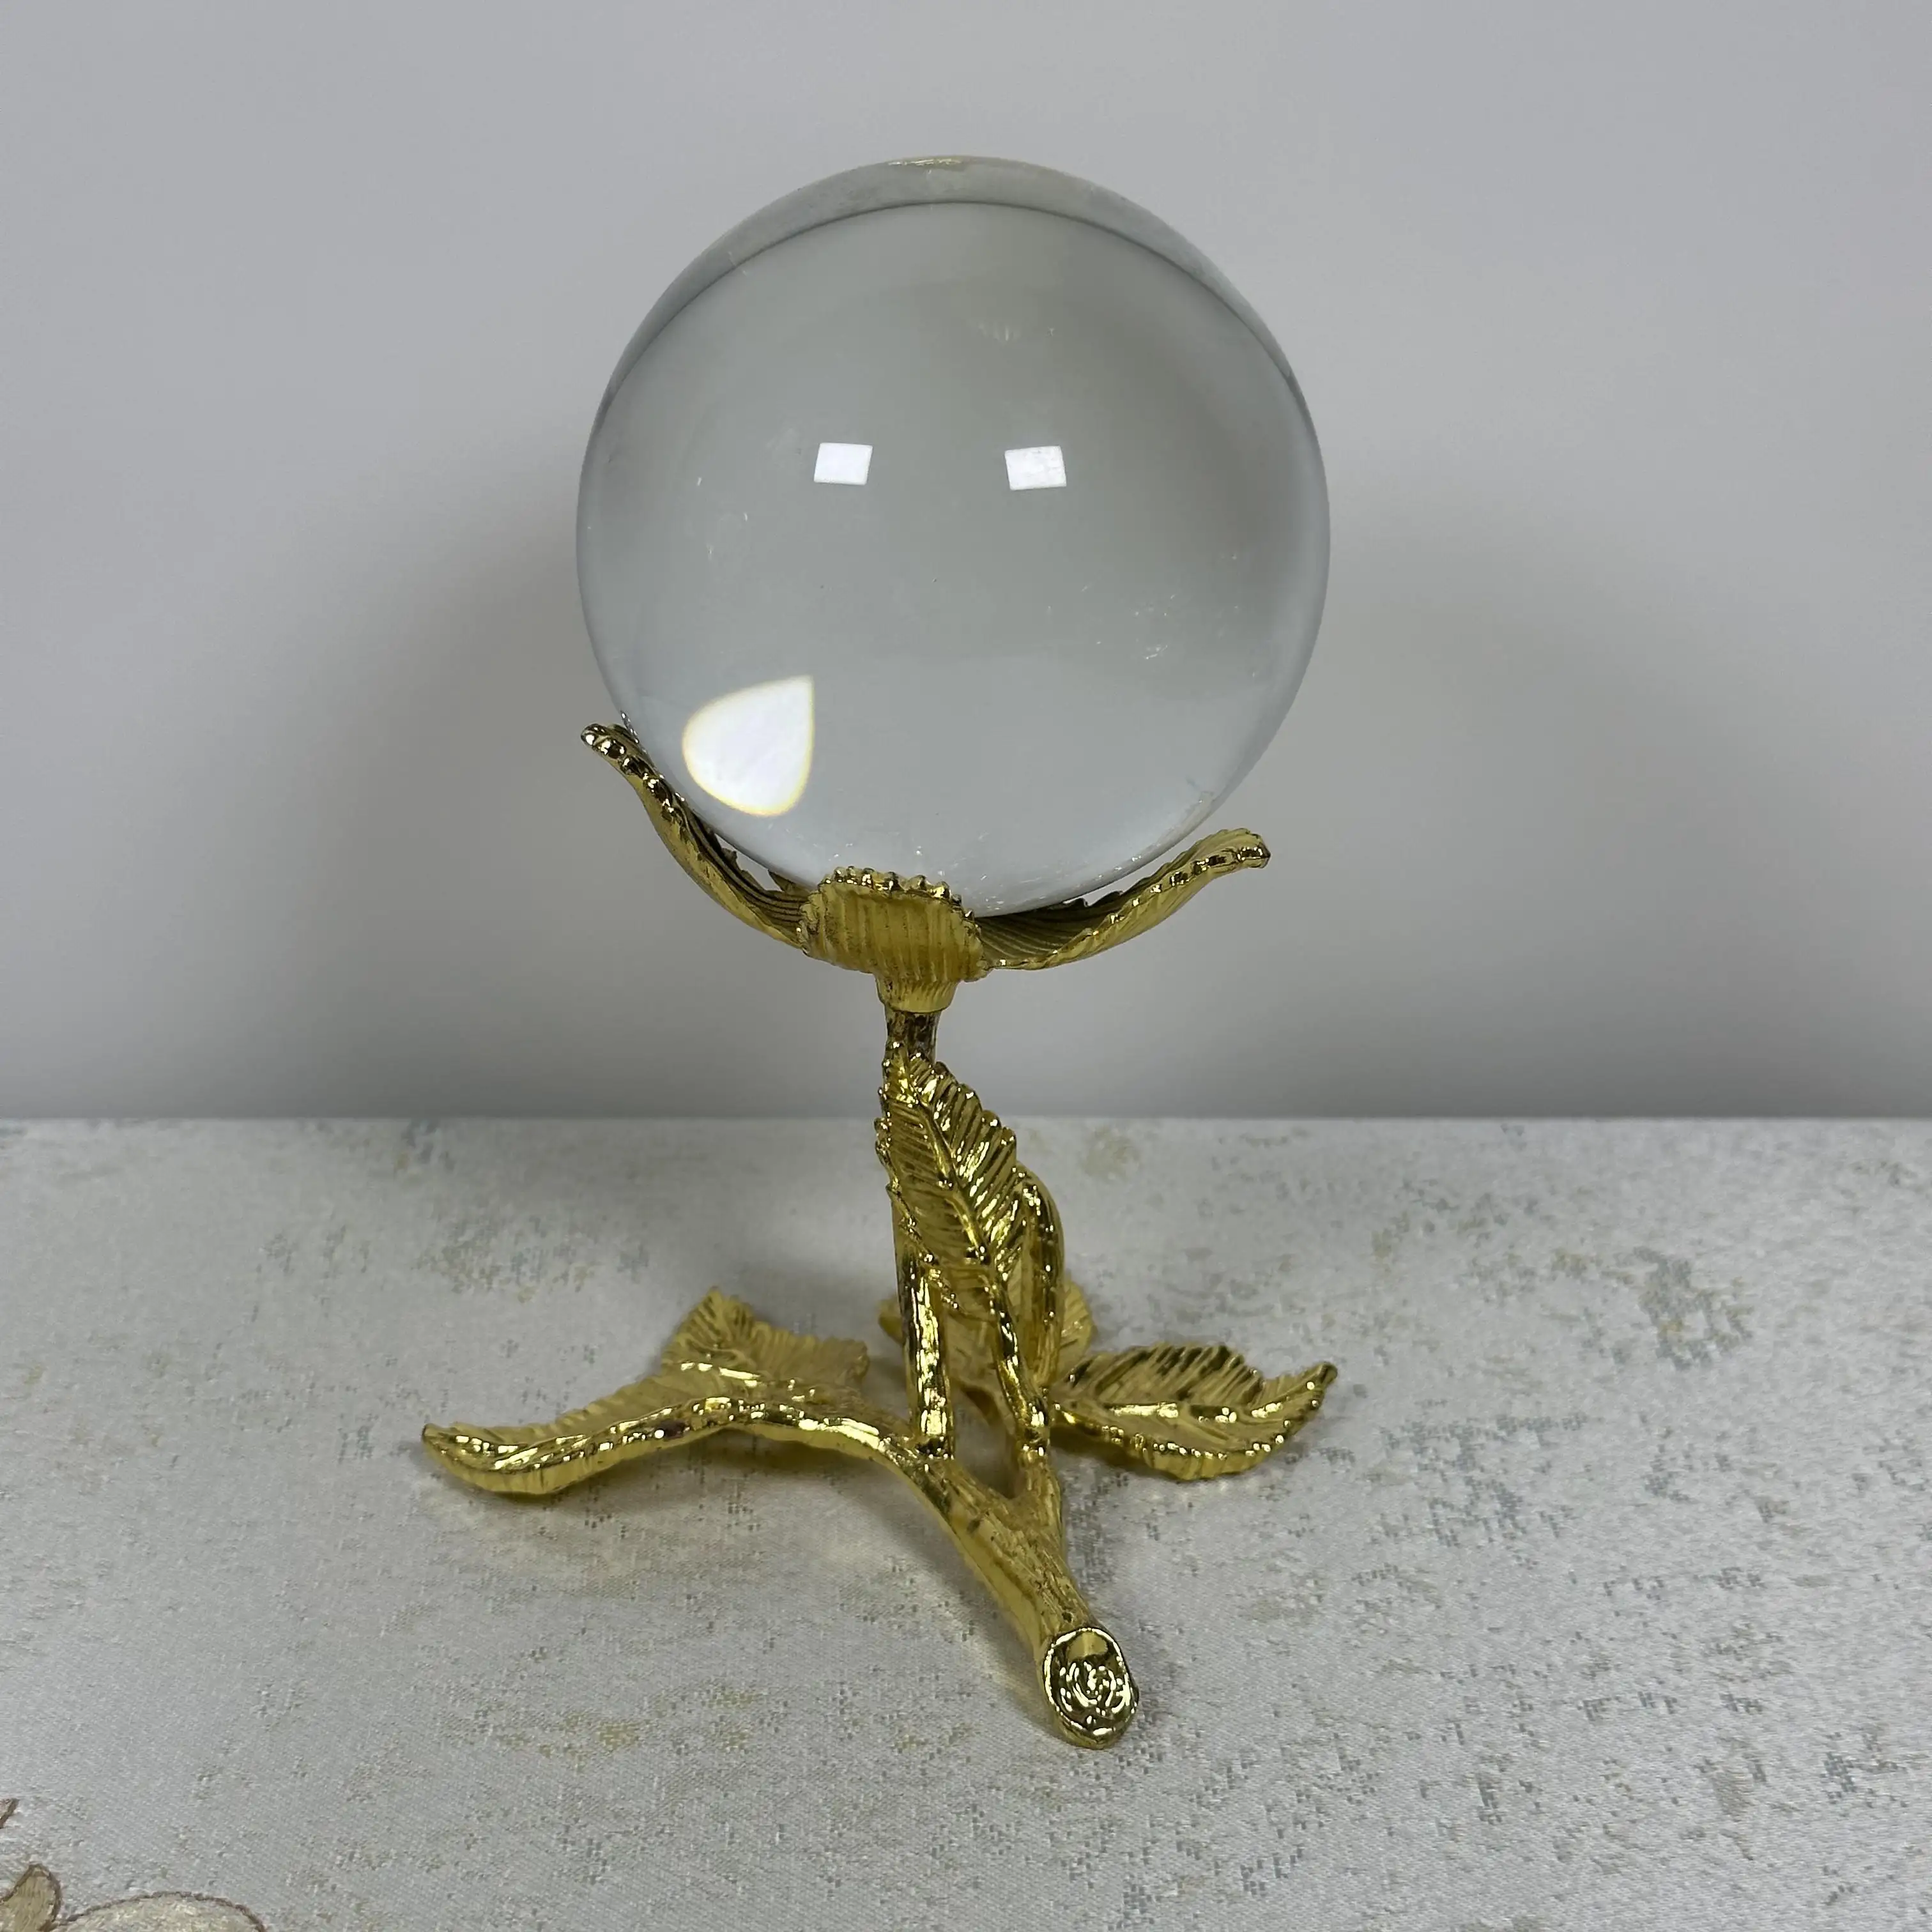 Fabrik Direkt verkauf Luxus Home Decoration Gutes Glück Klarer Kristall Solid Sphere Glass Globe Ball